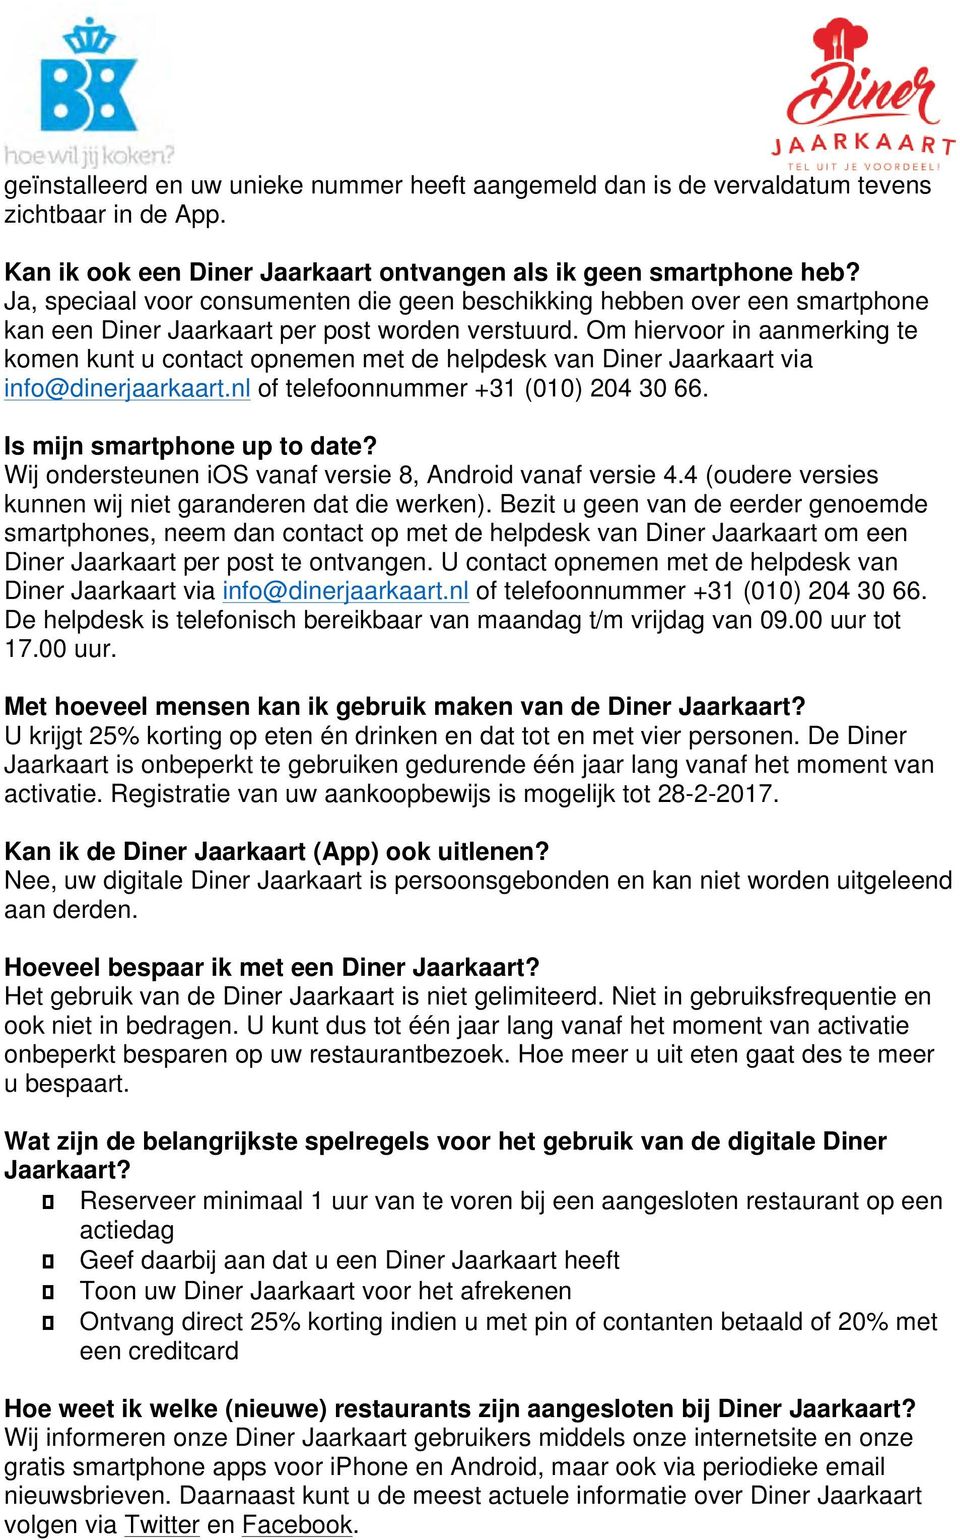 Om hiervoor in aanmerking te komen kunt u contact opnemen met de helpdesk van Diner Jaarkaart via info@dinerjaarkaart.nl of telefoonnummer +31 (010) 204 30 66. Is mijn smartphone up to date?